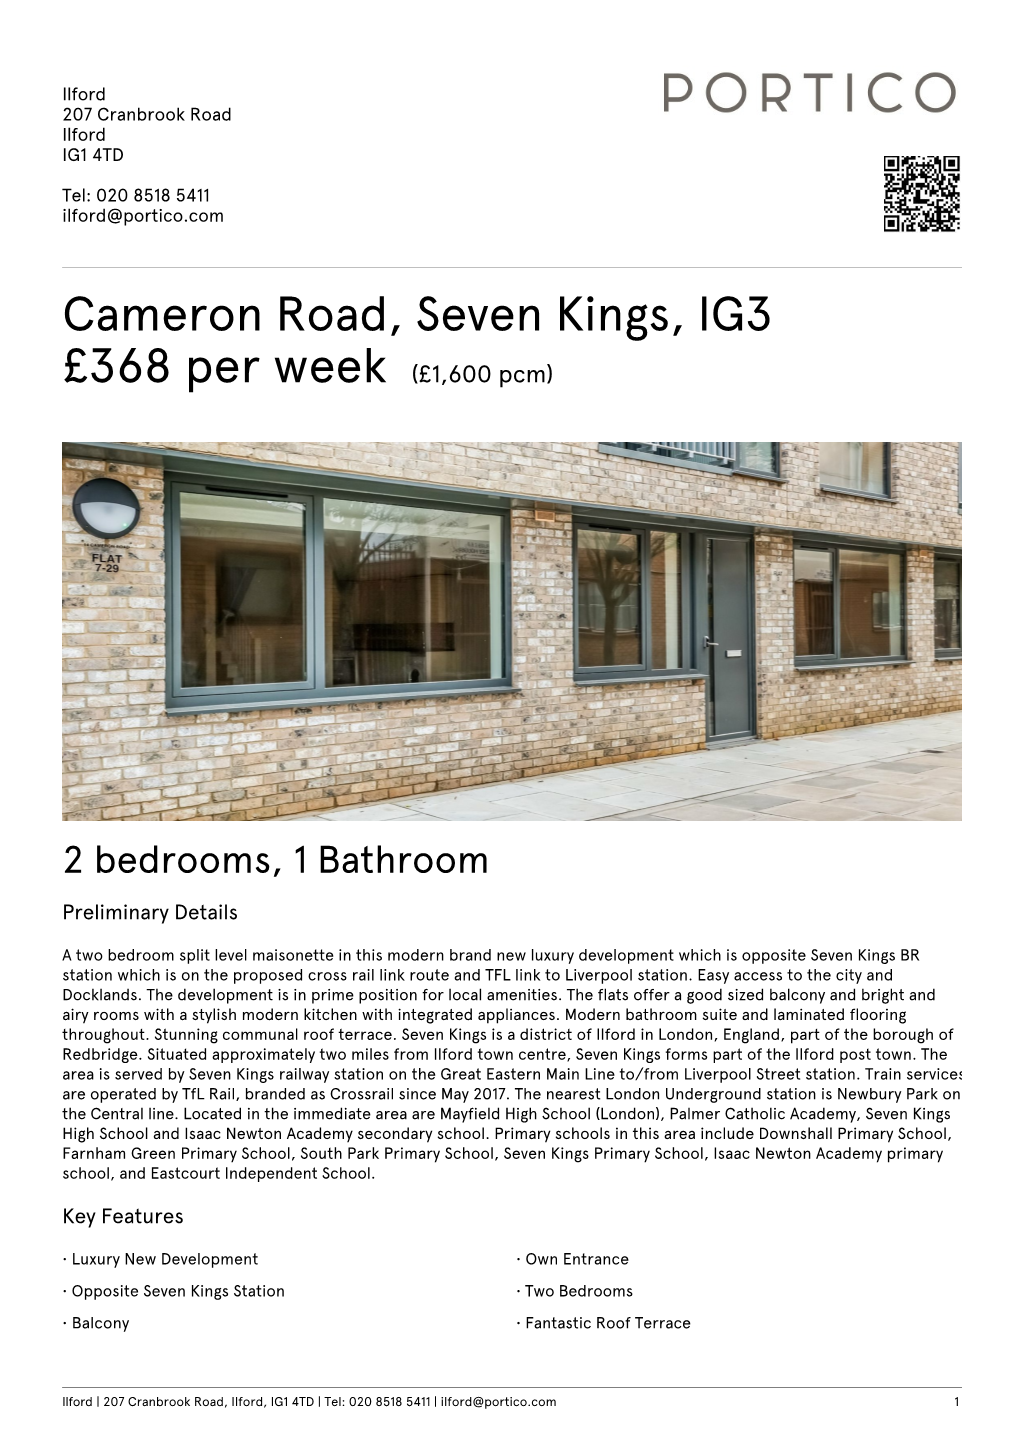 Cameron Road, Seven Kings, IG3 £368 Per Week